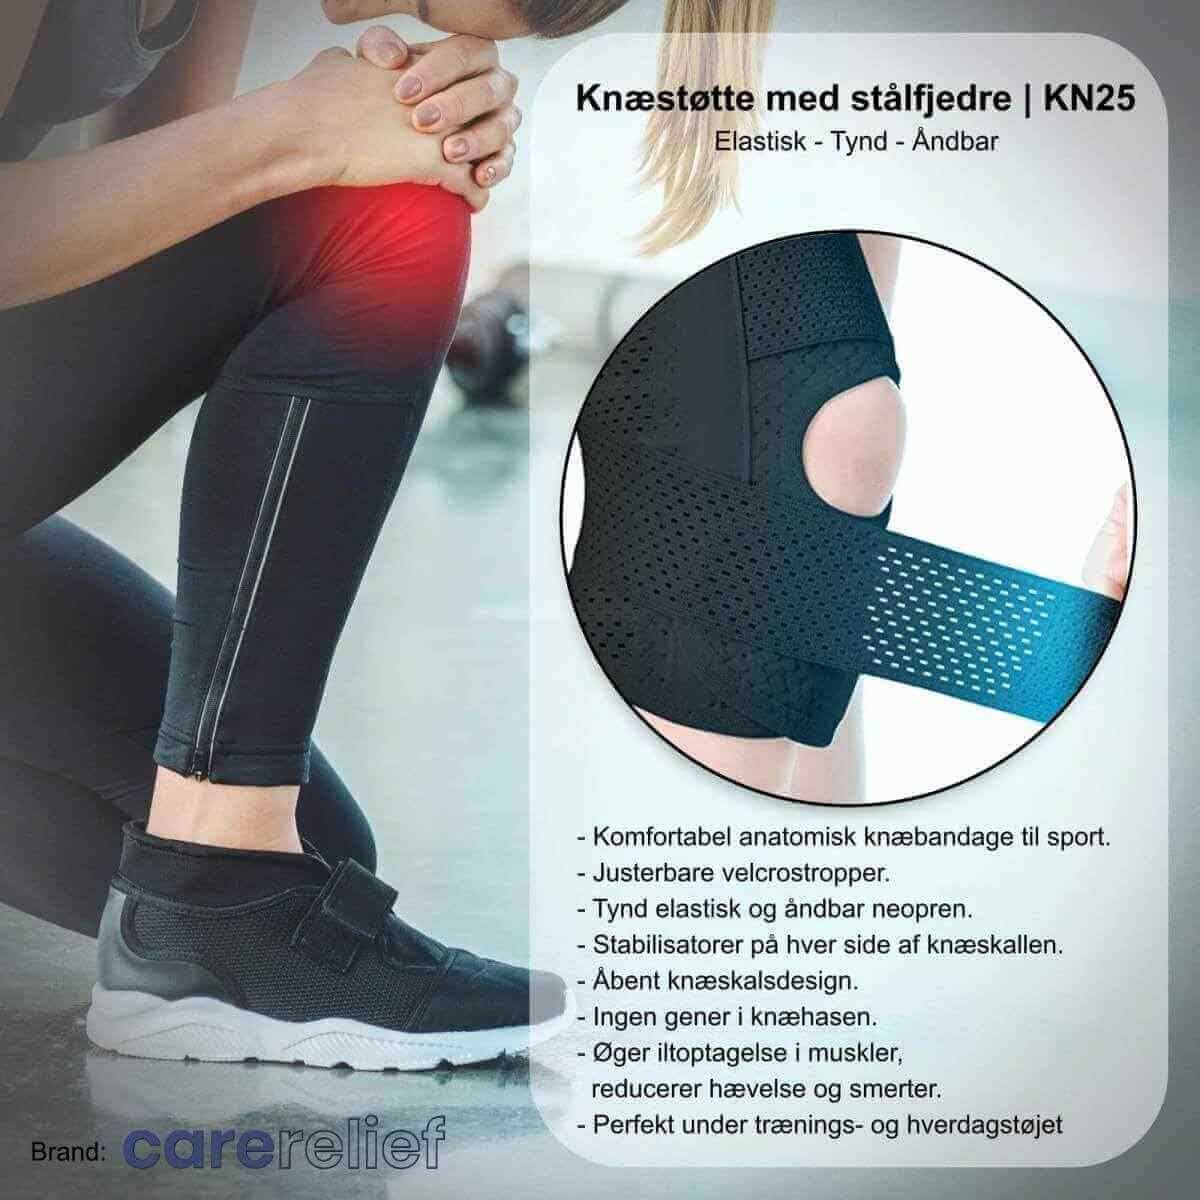 Knæstøtte med stålfjedre til et svagt og ustabilt knæ. Knæbind KN25 med skinner er slank og åndbart. Kan justeres og bæres under tøjet ved sport og i hverdagen.